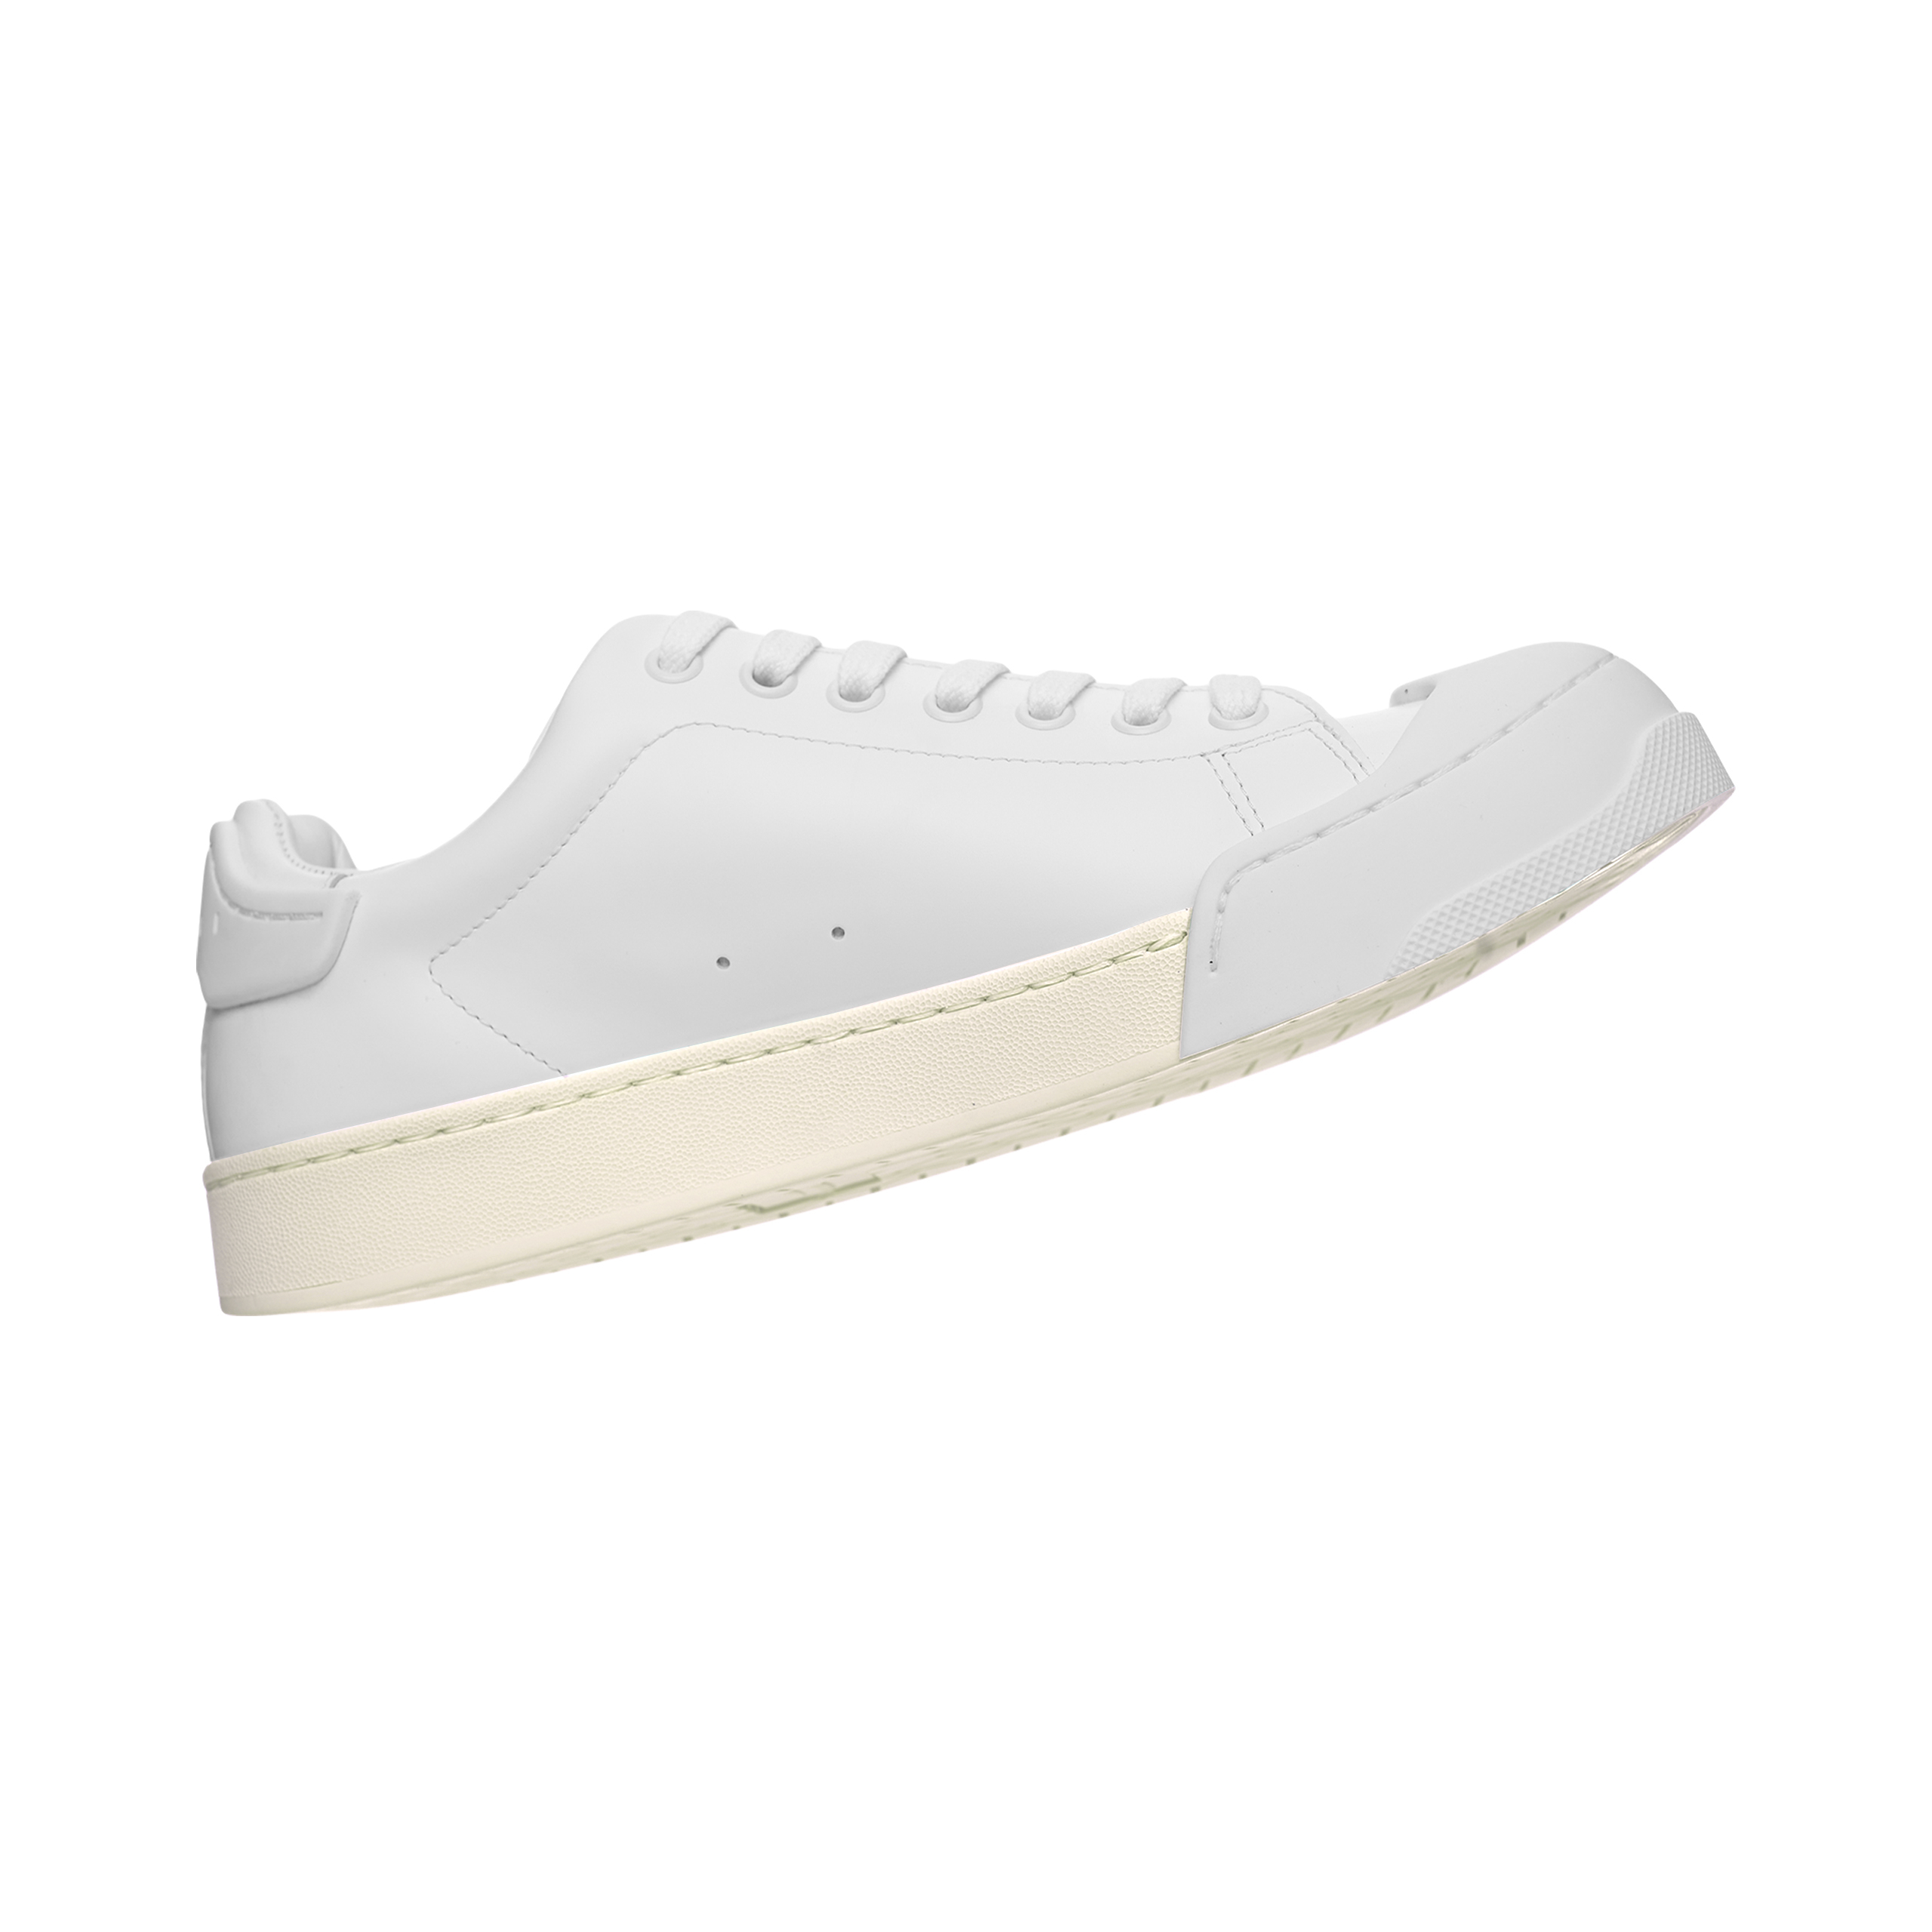 Shop Marni White Dada Bumper Sneakers